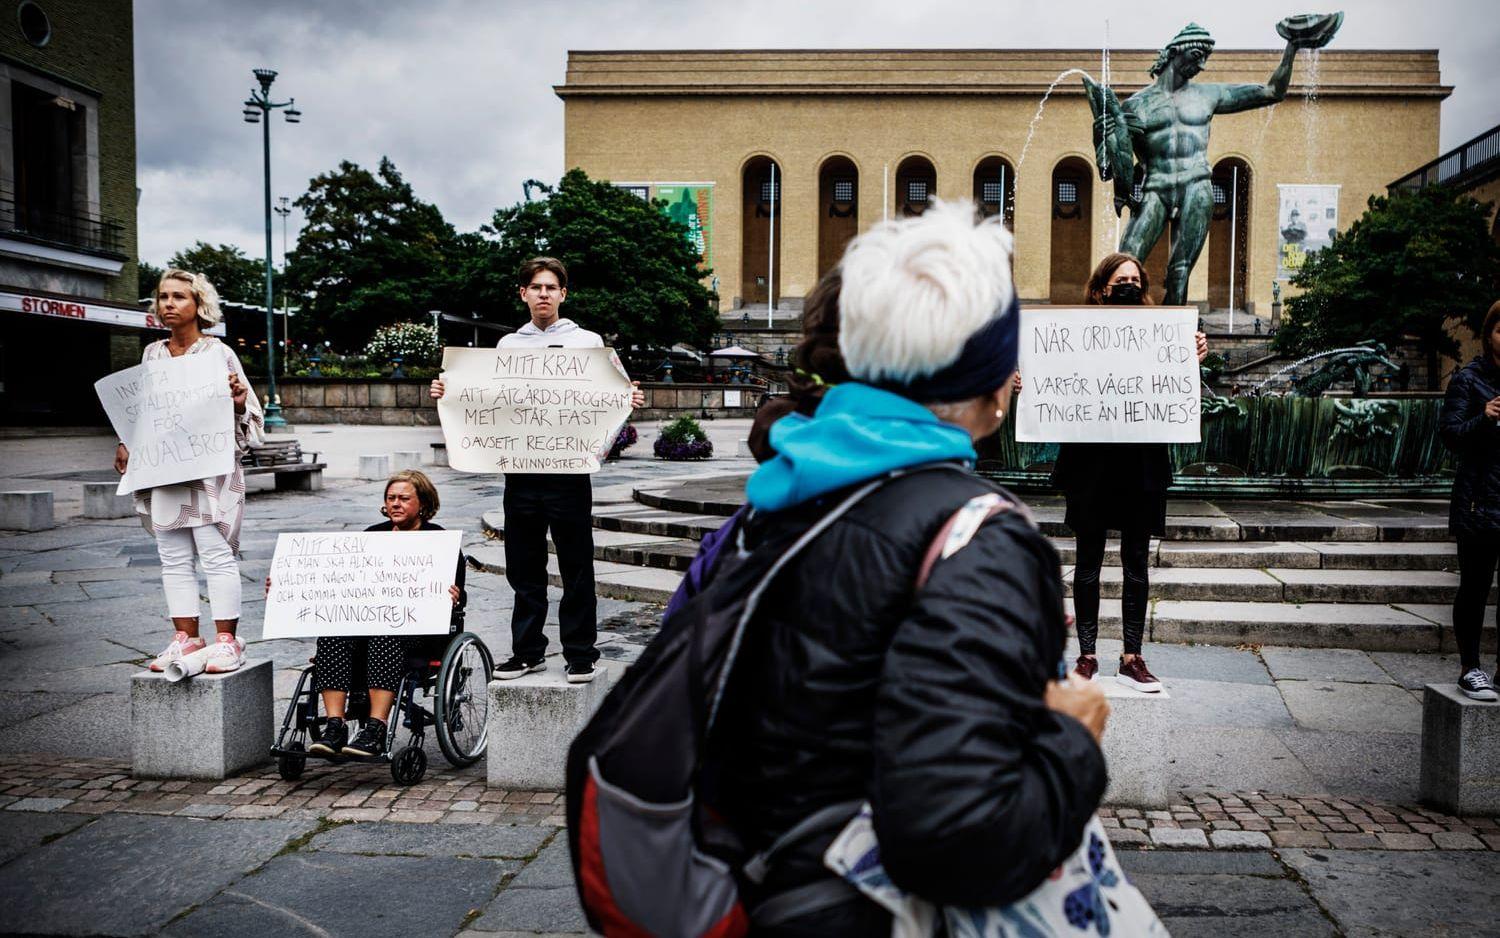 Initiativet Kvinnostrejk finns över hela landet och kom till Göteborg i mars. Sedan dess har en grupp manifesterat på Götaplatsen varje fredag, med förhoppningen att väcka lika stor uppmärksamhet som Greta Thunbergs klimatstrejk.